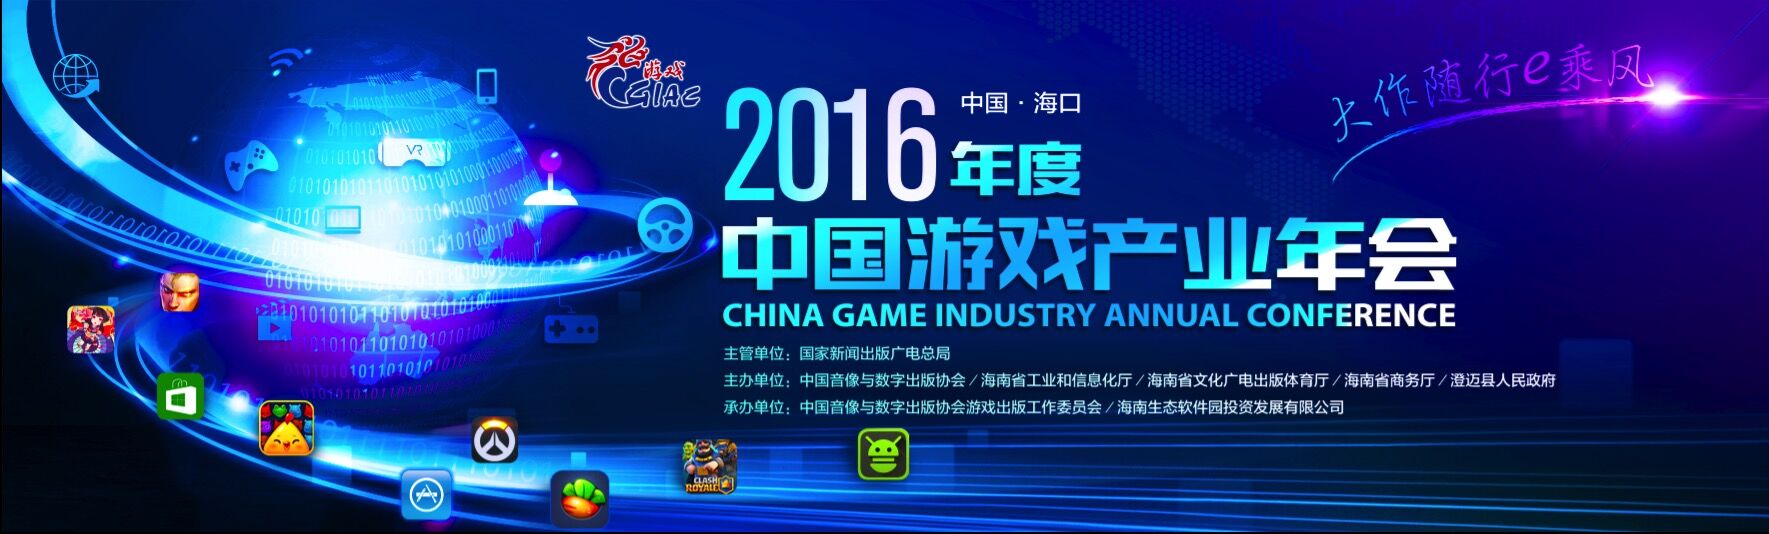 明日开幕 2016中国游戏产业年会迎报到高峰